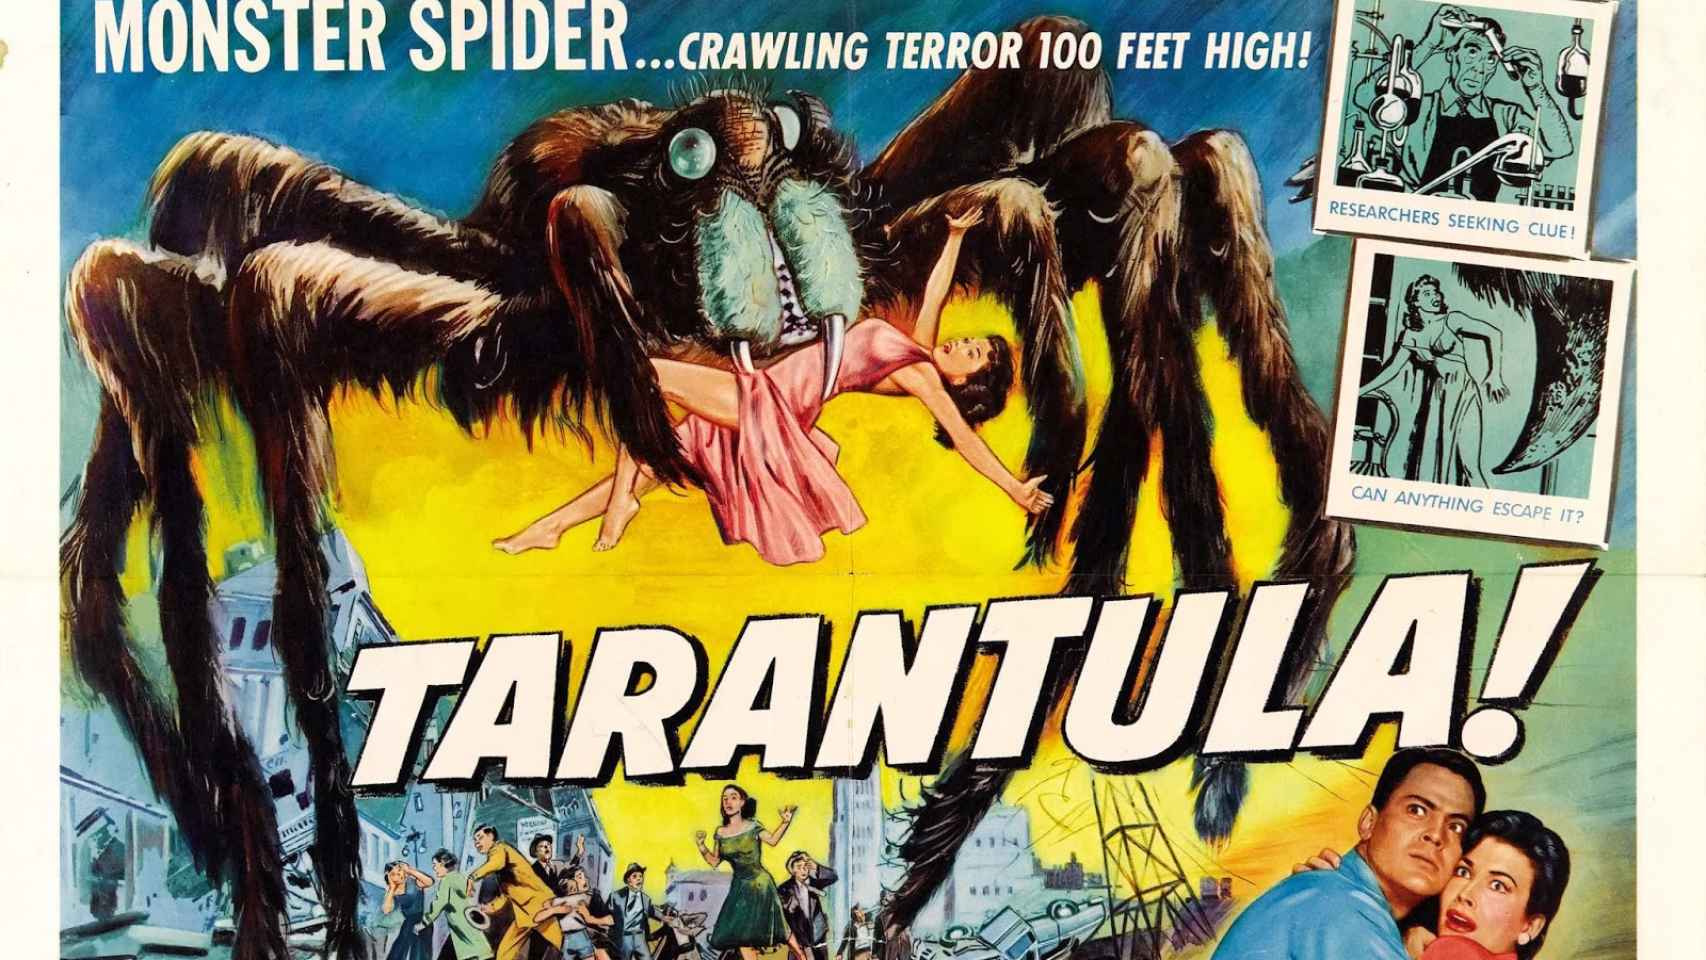 Tarántula (1955), el clásico de araña gigante de Jack Arnold